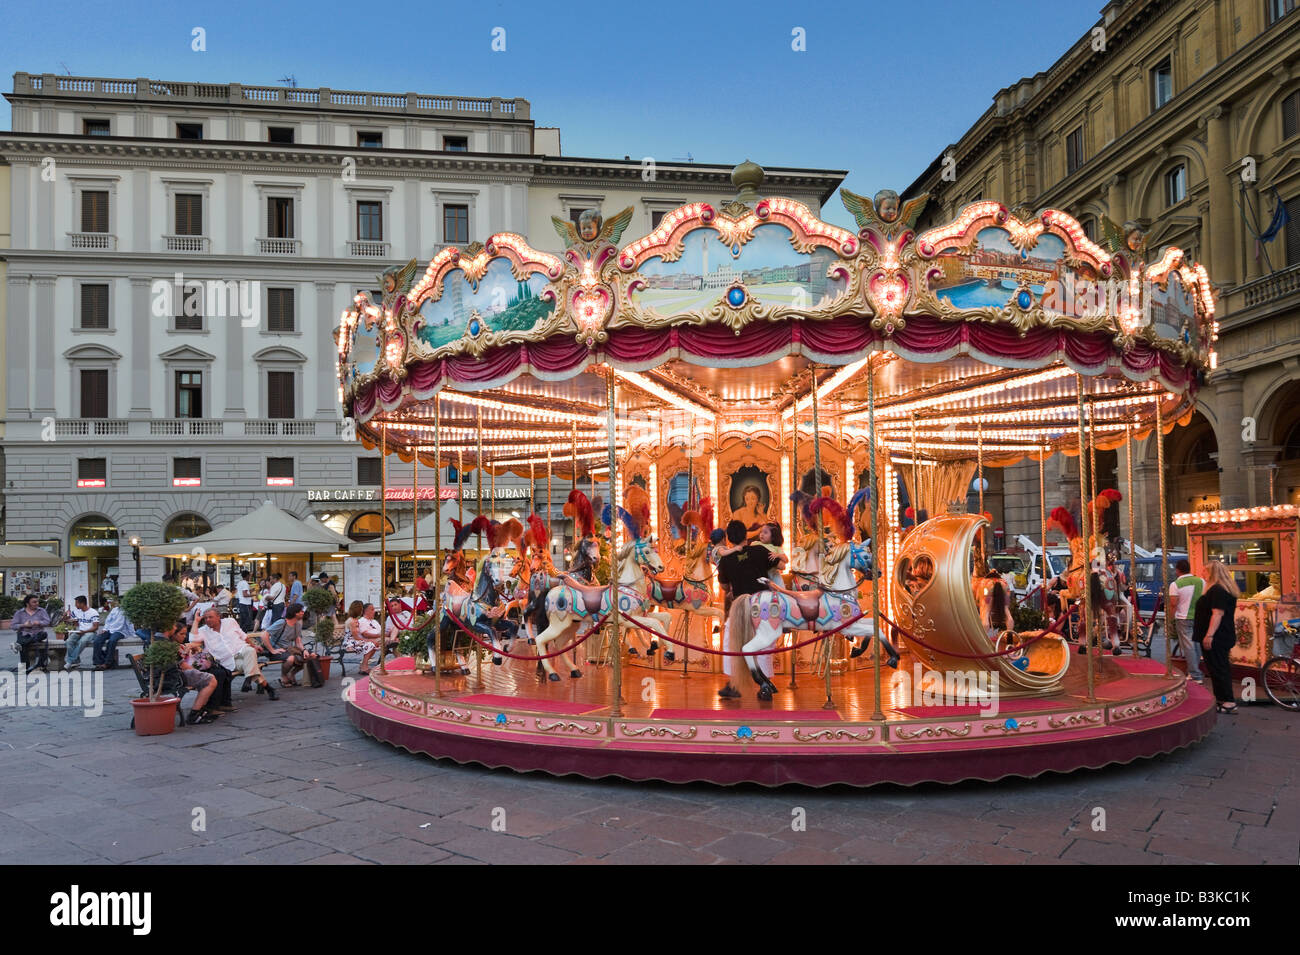 Carrusel en la Piazza della Republica, Florencia, Toscana, Italia Foto de stock